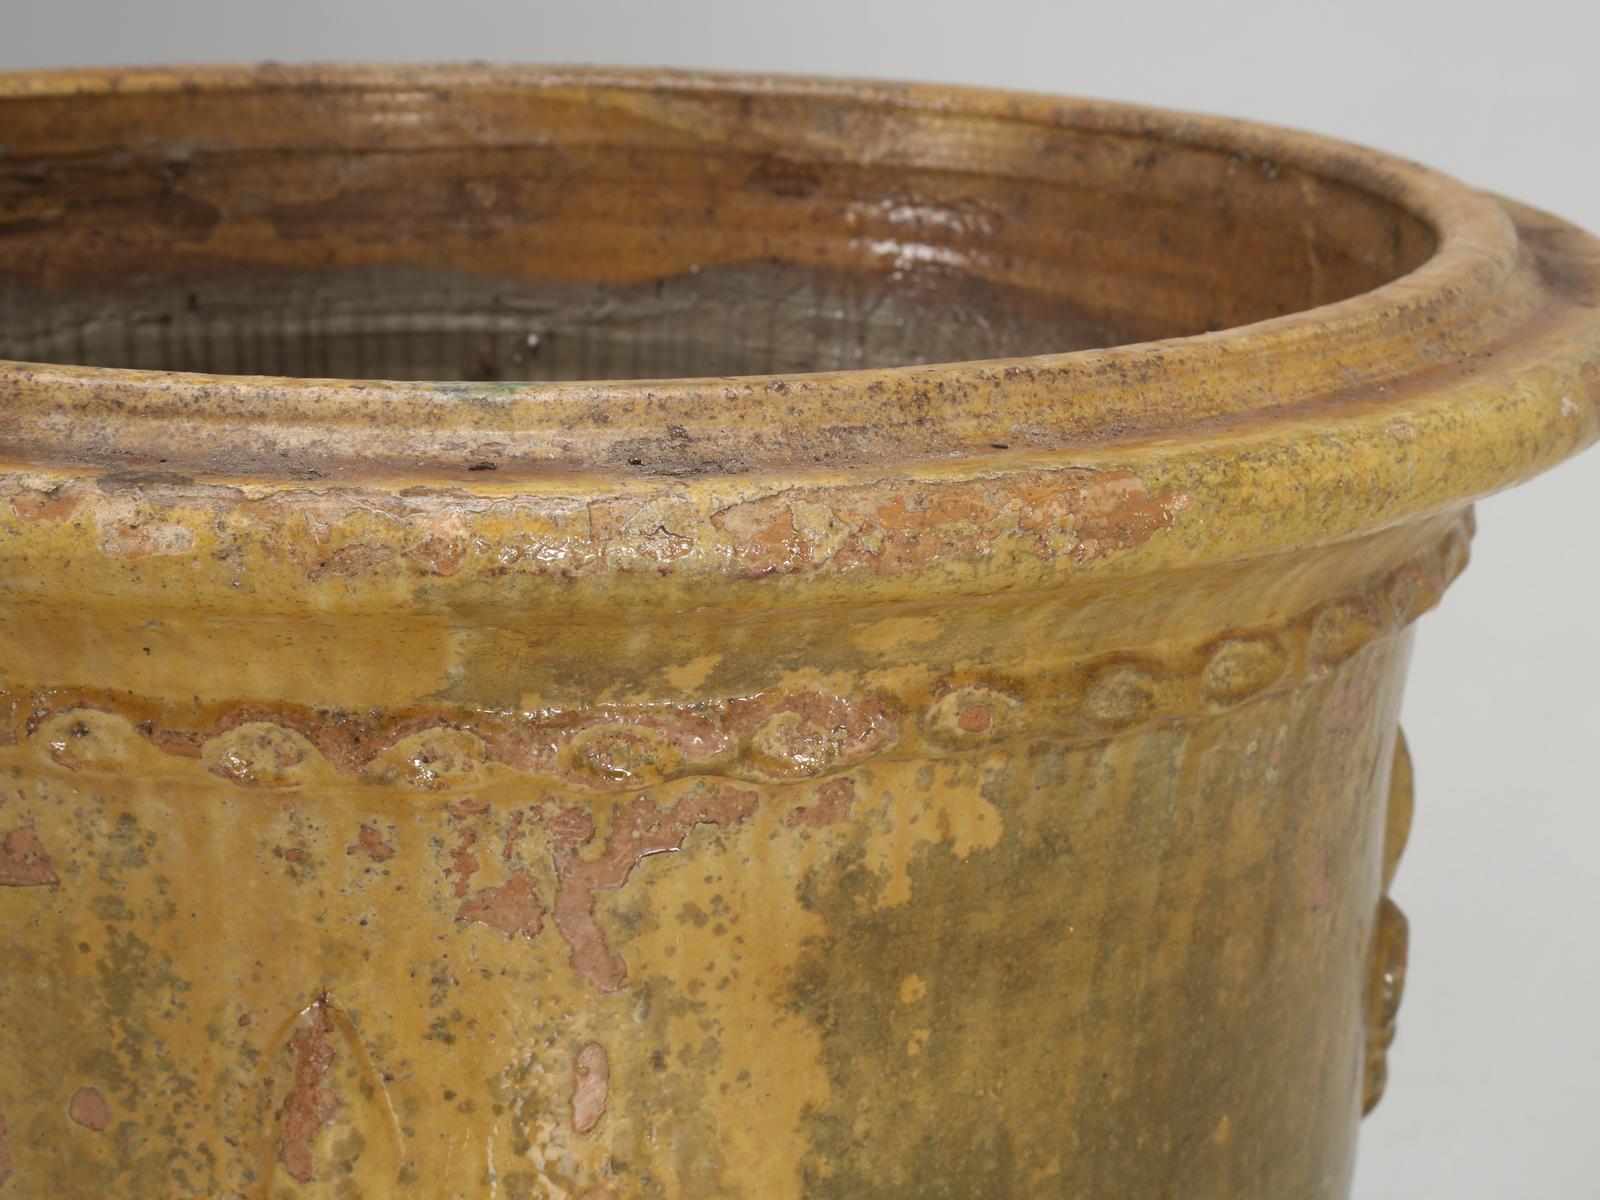 French Vase or Pot from Anduze, France (Töpferwaren)